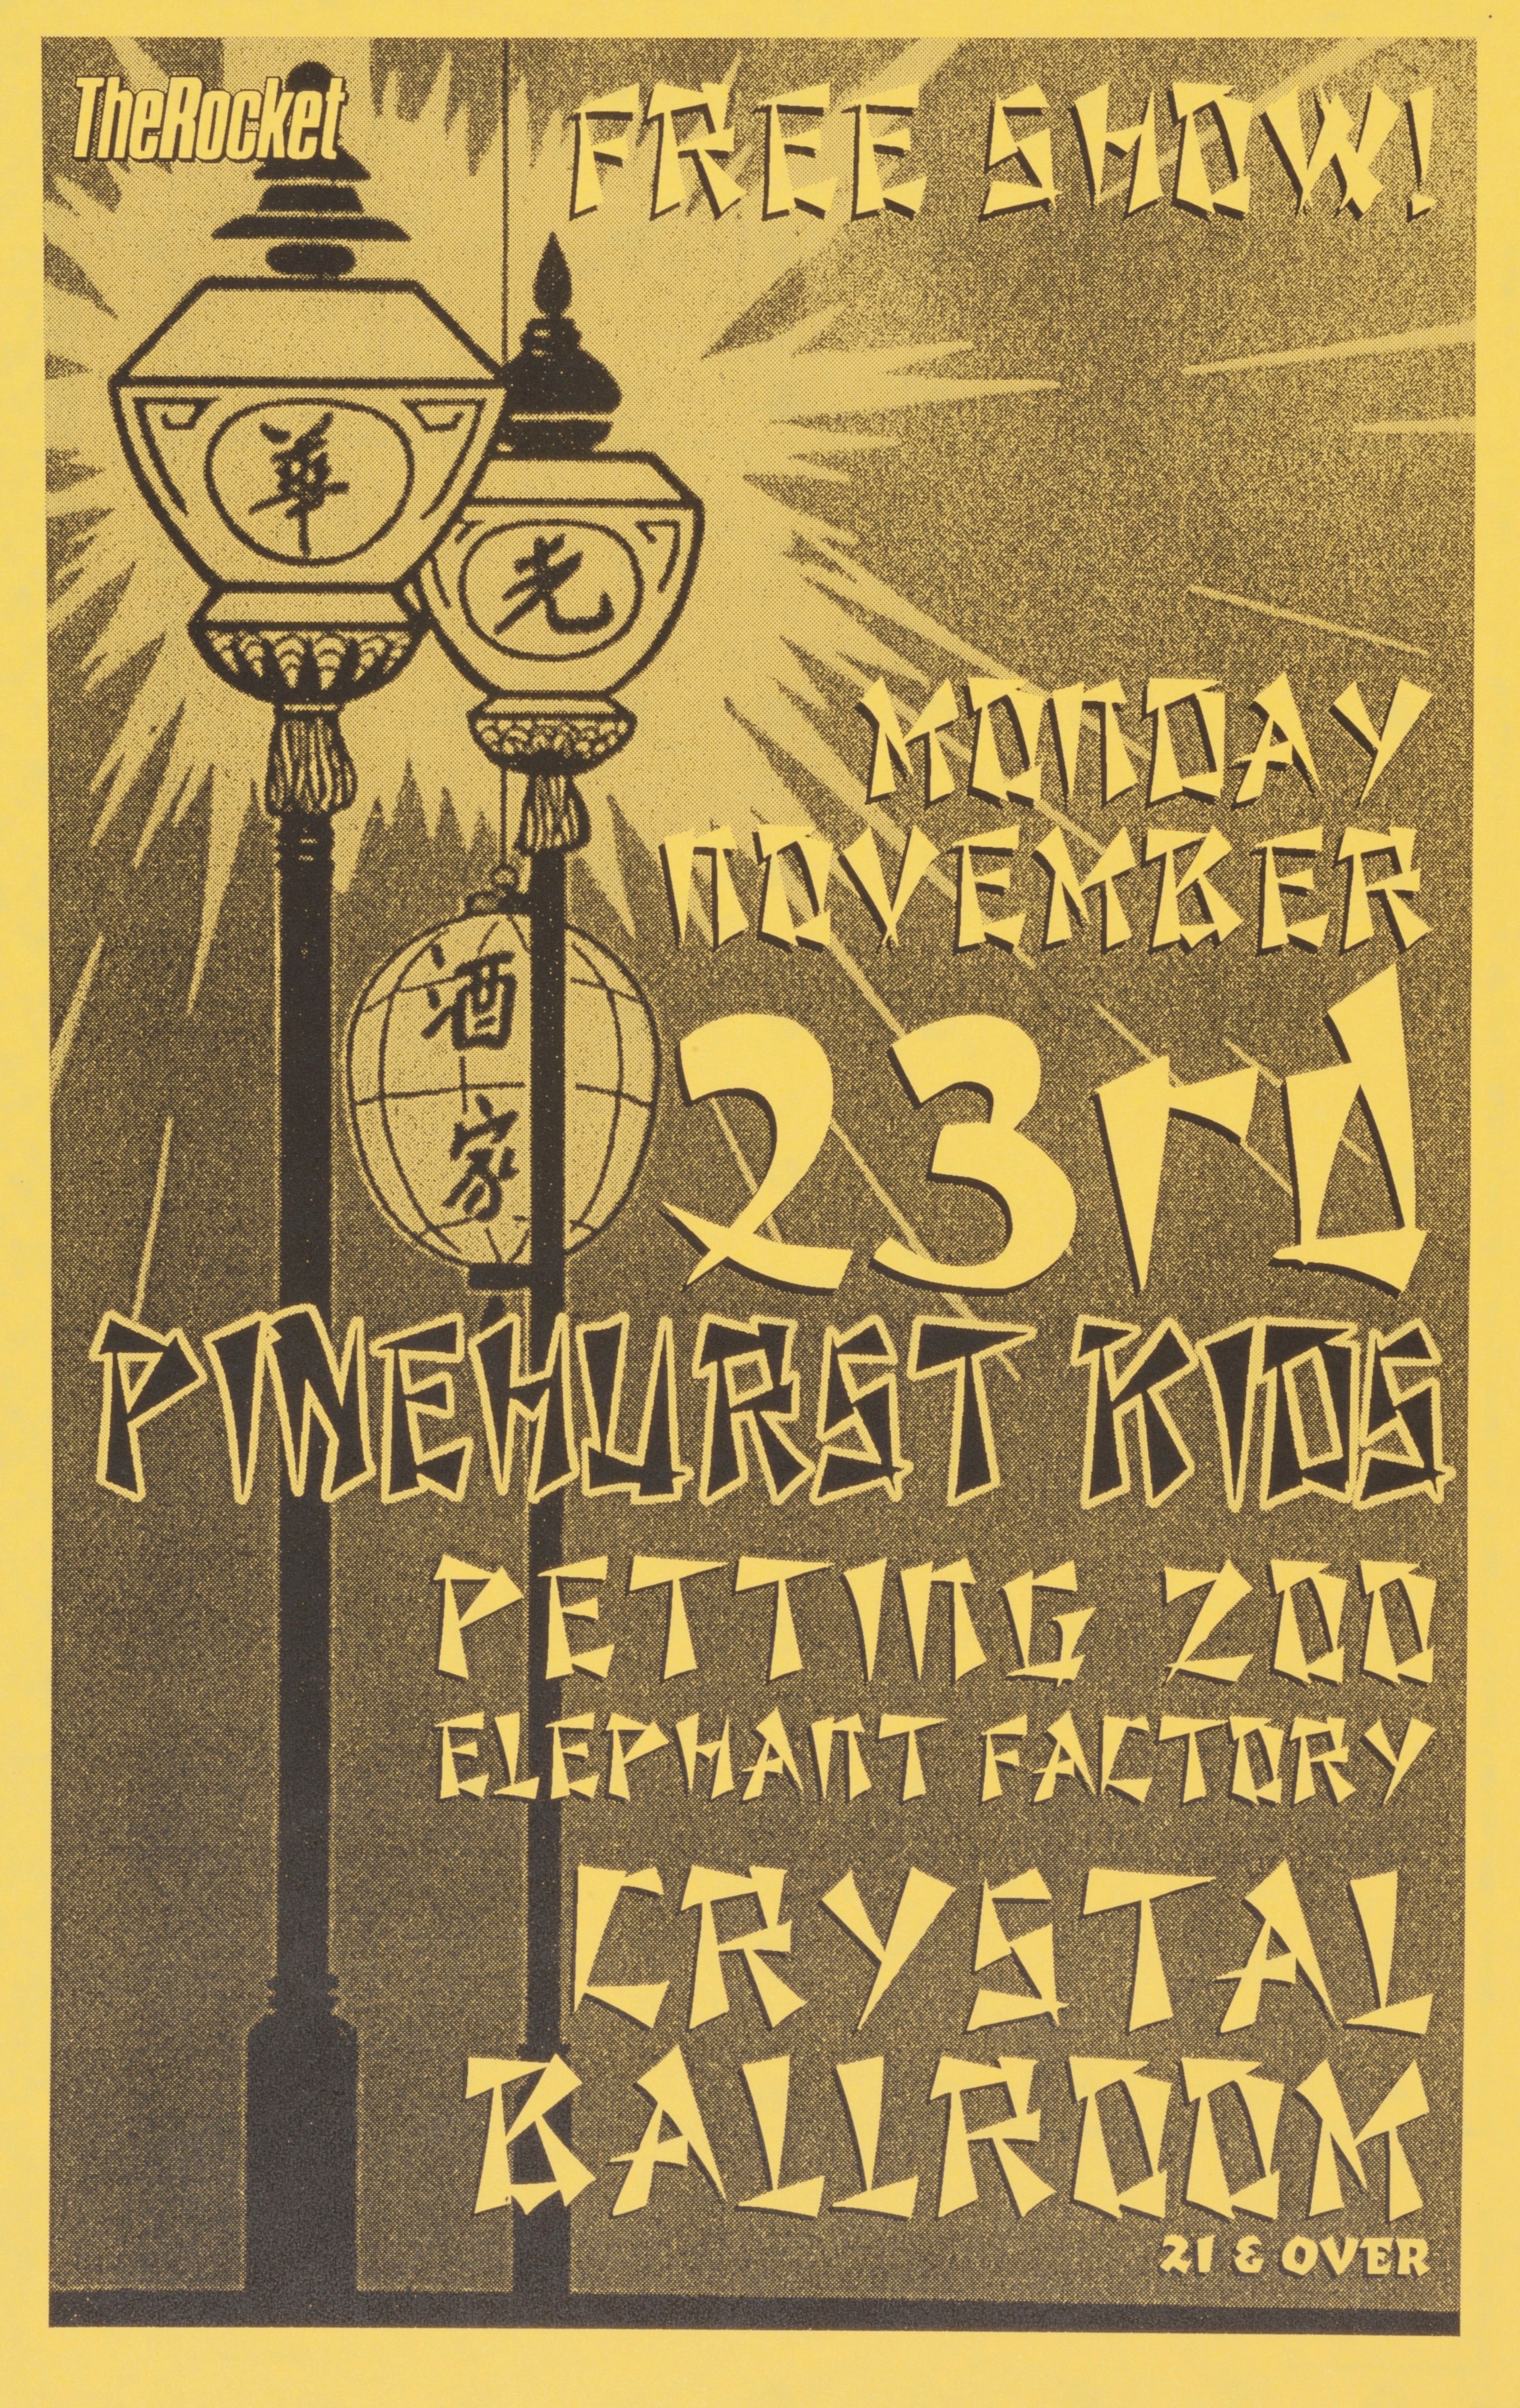 MXP-193.7 Pinehurst Kids 1998 Crystal Ballroom  Nov 23 Concert Poster